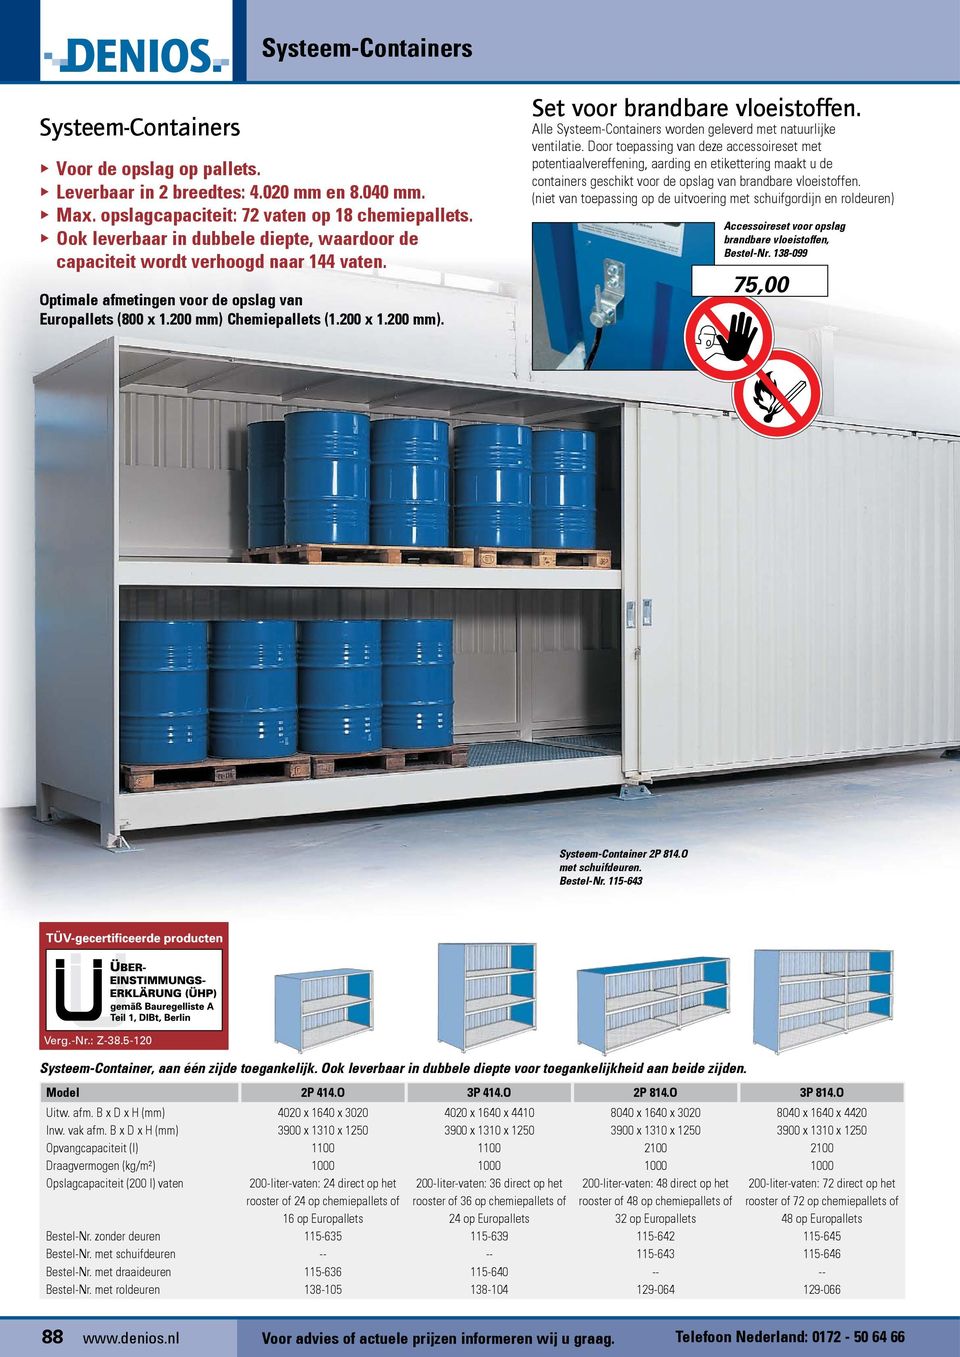 Alle Systeem-Containers worden geleverd met natuurlijke ventilatie.